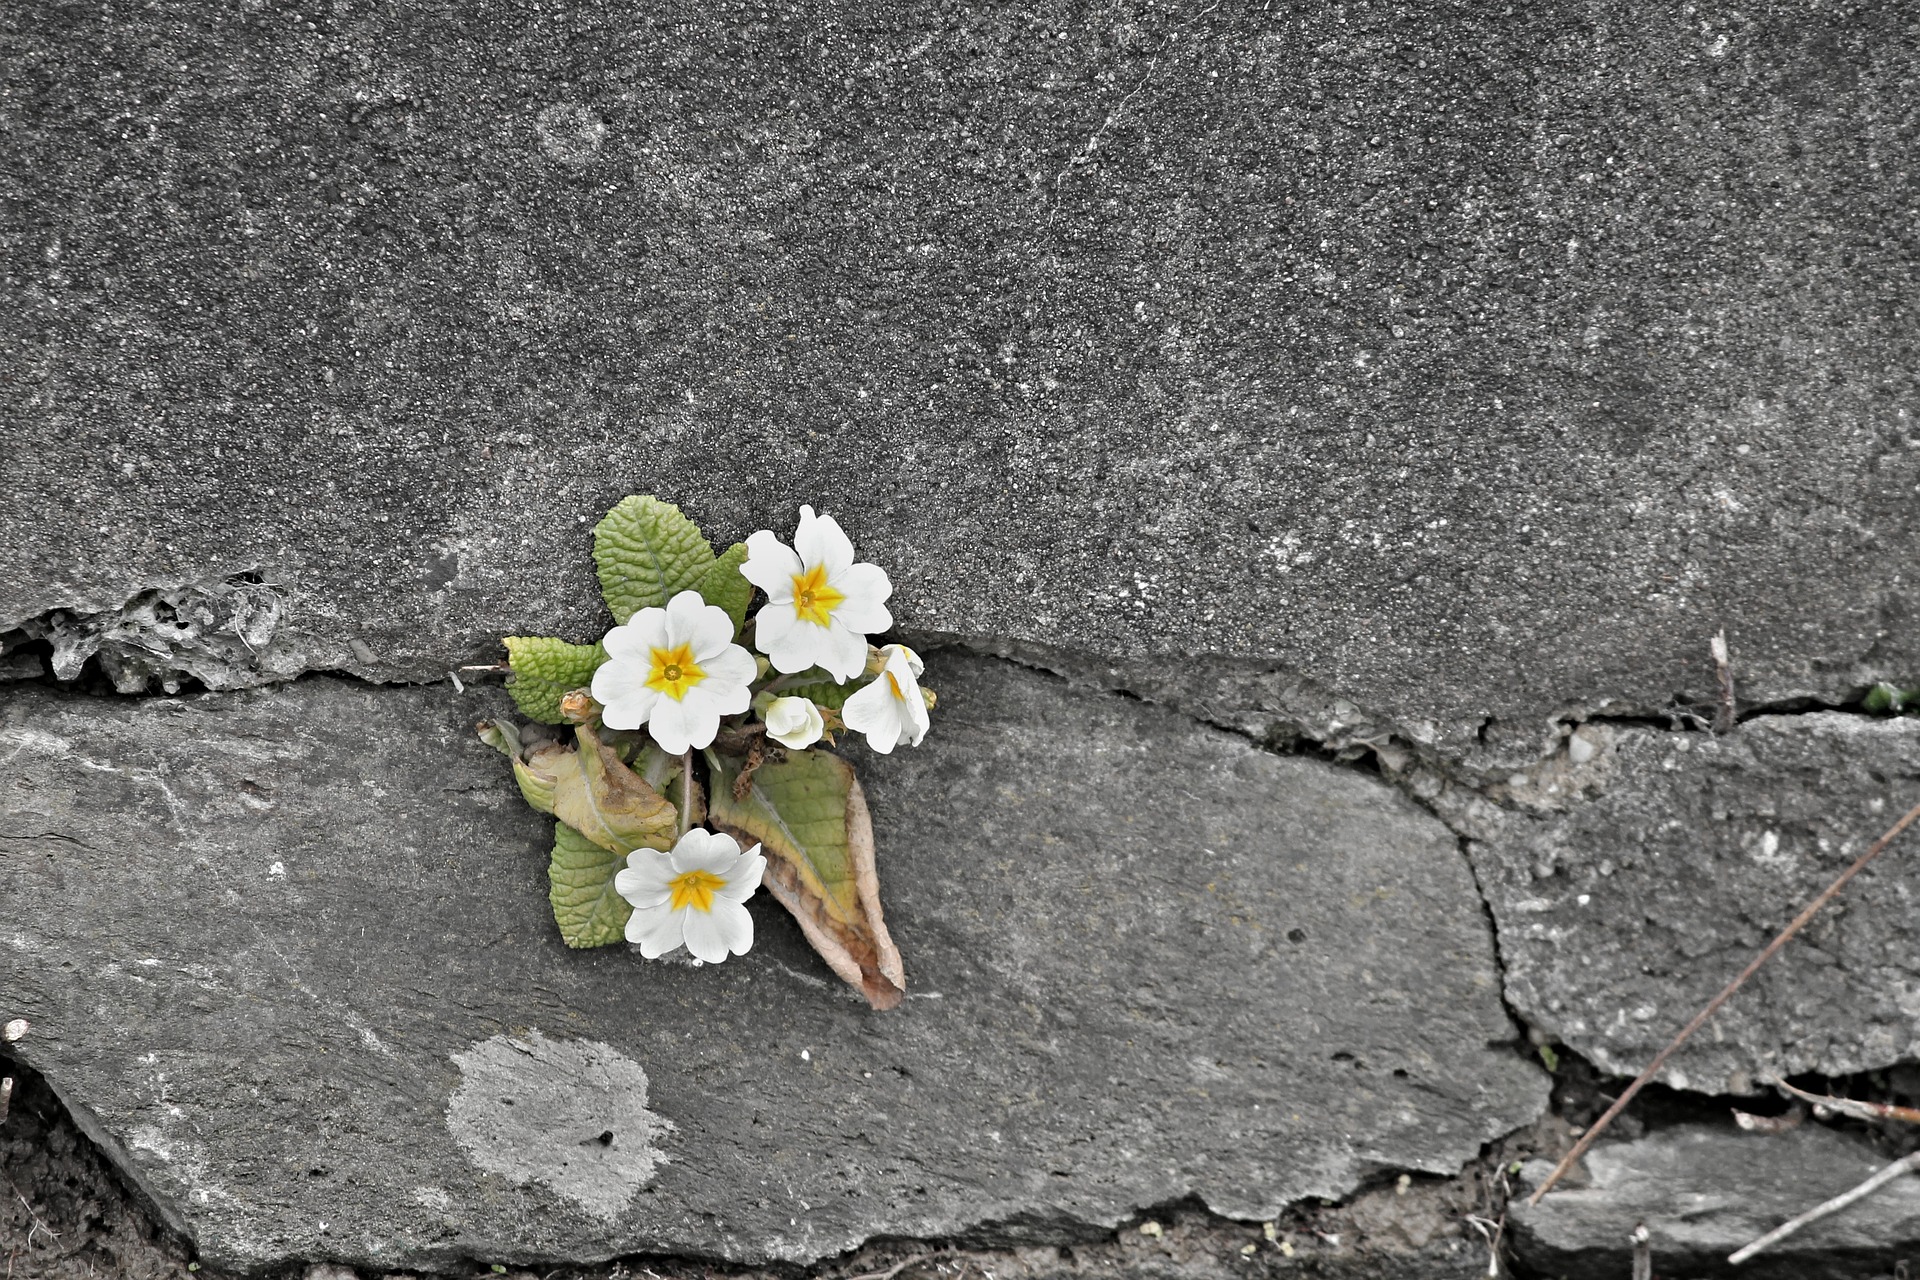 壁に咲くサクラソウ